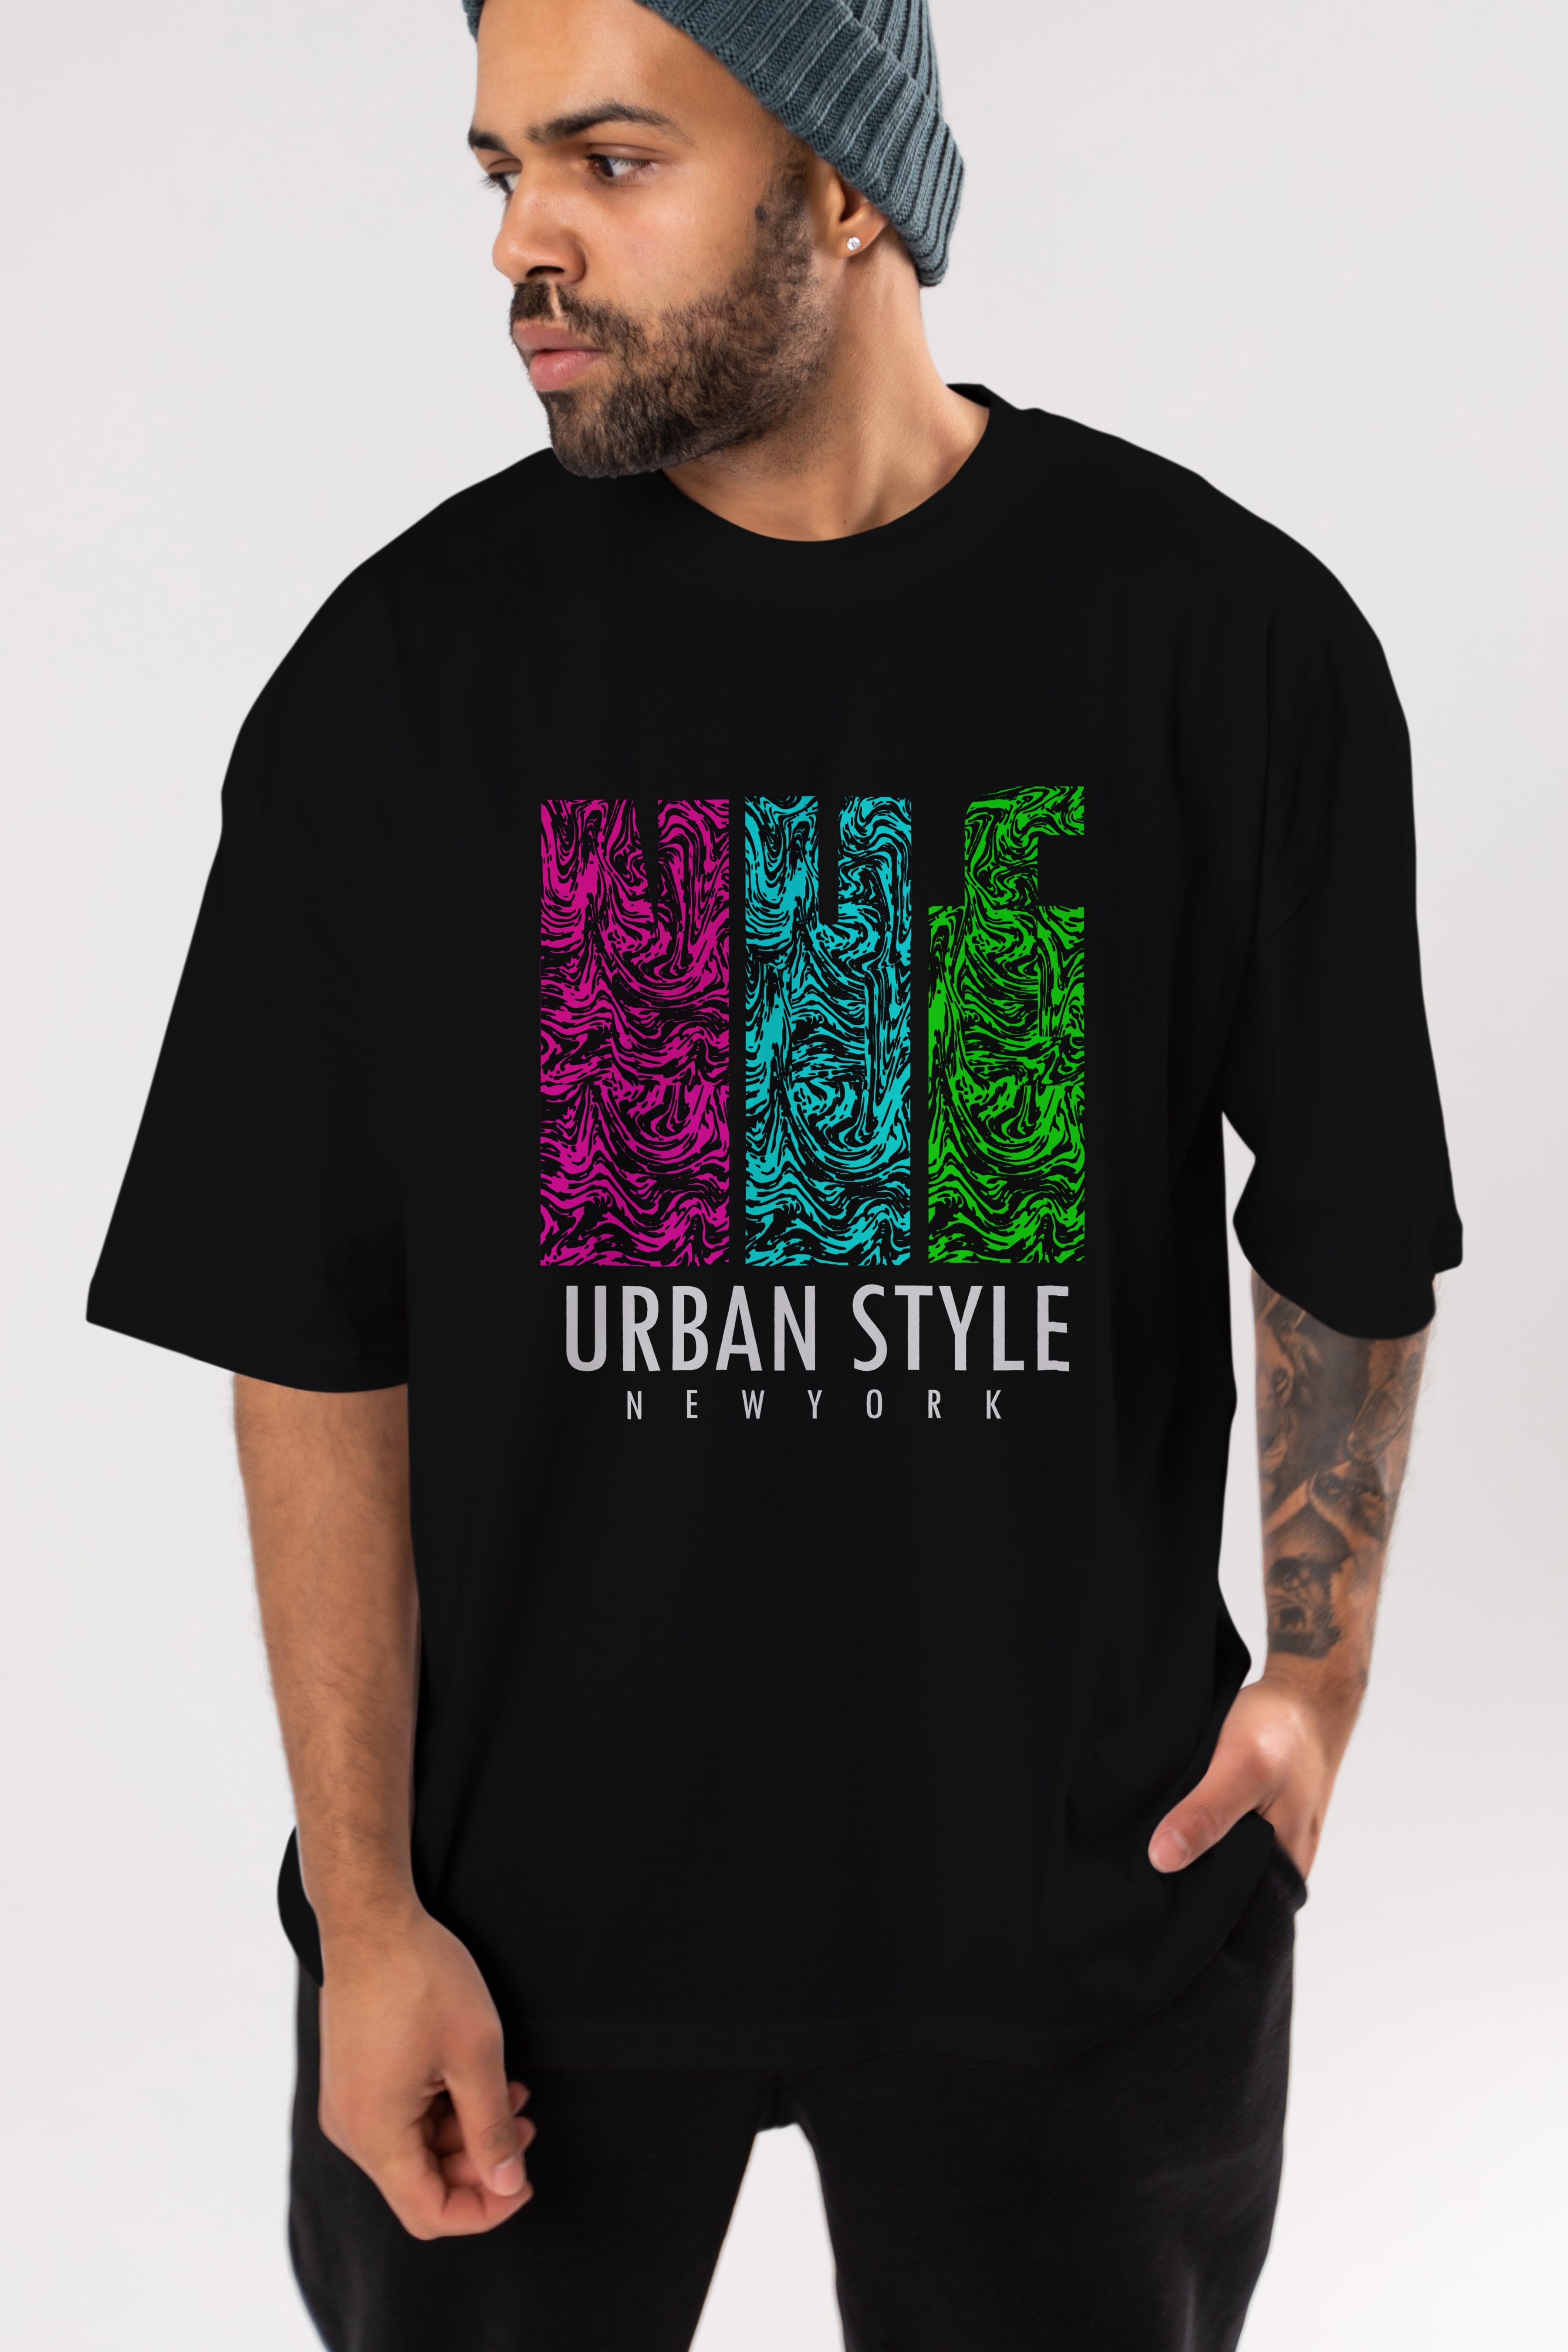 Urban Style Newyork Ön Baskılı Oversize t-shirt Erkek Kadın Unisex